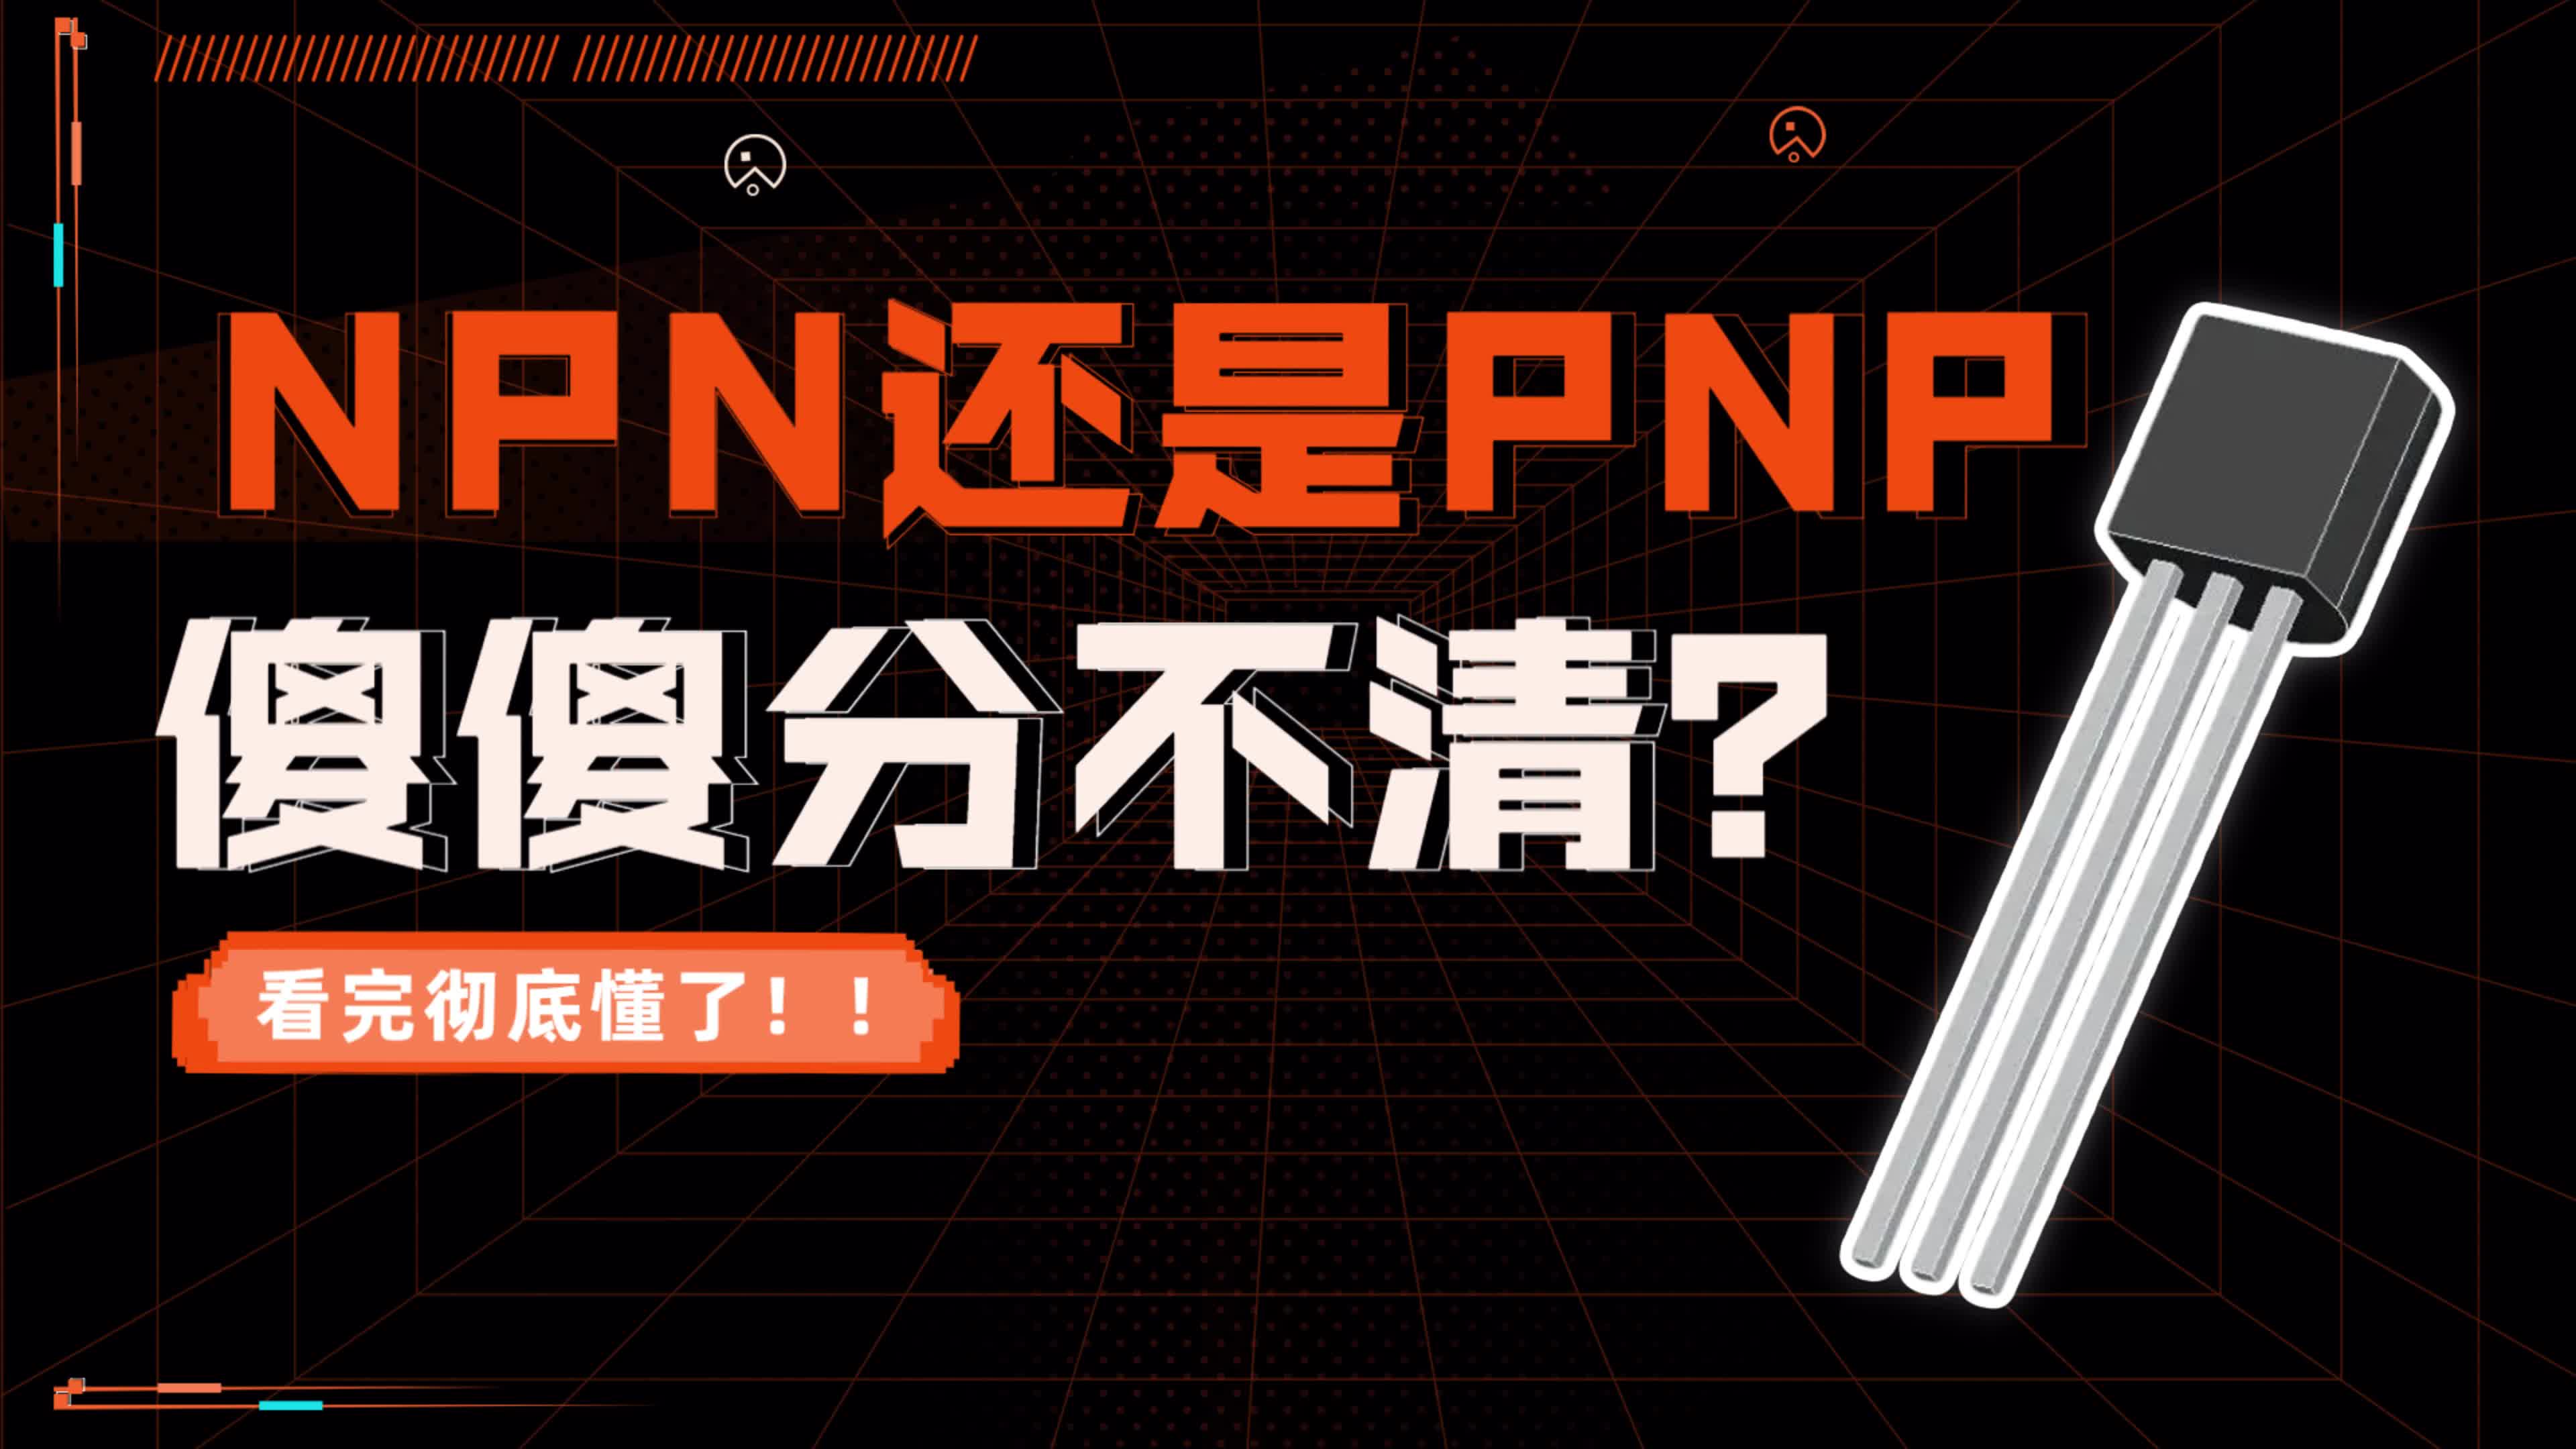 還是分不清NPN還是PNP 答應我看完你就徹底懂了#電工知識 #芯片制造 #電子元器件 